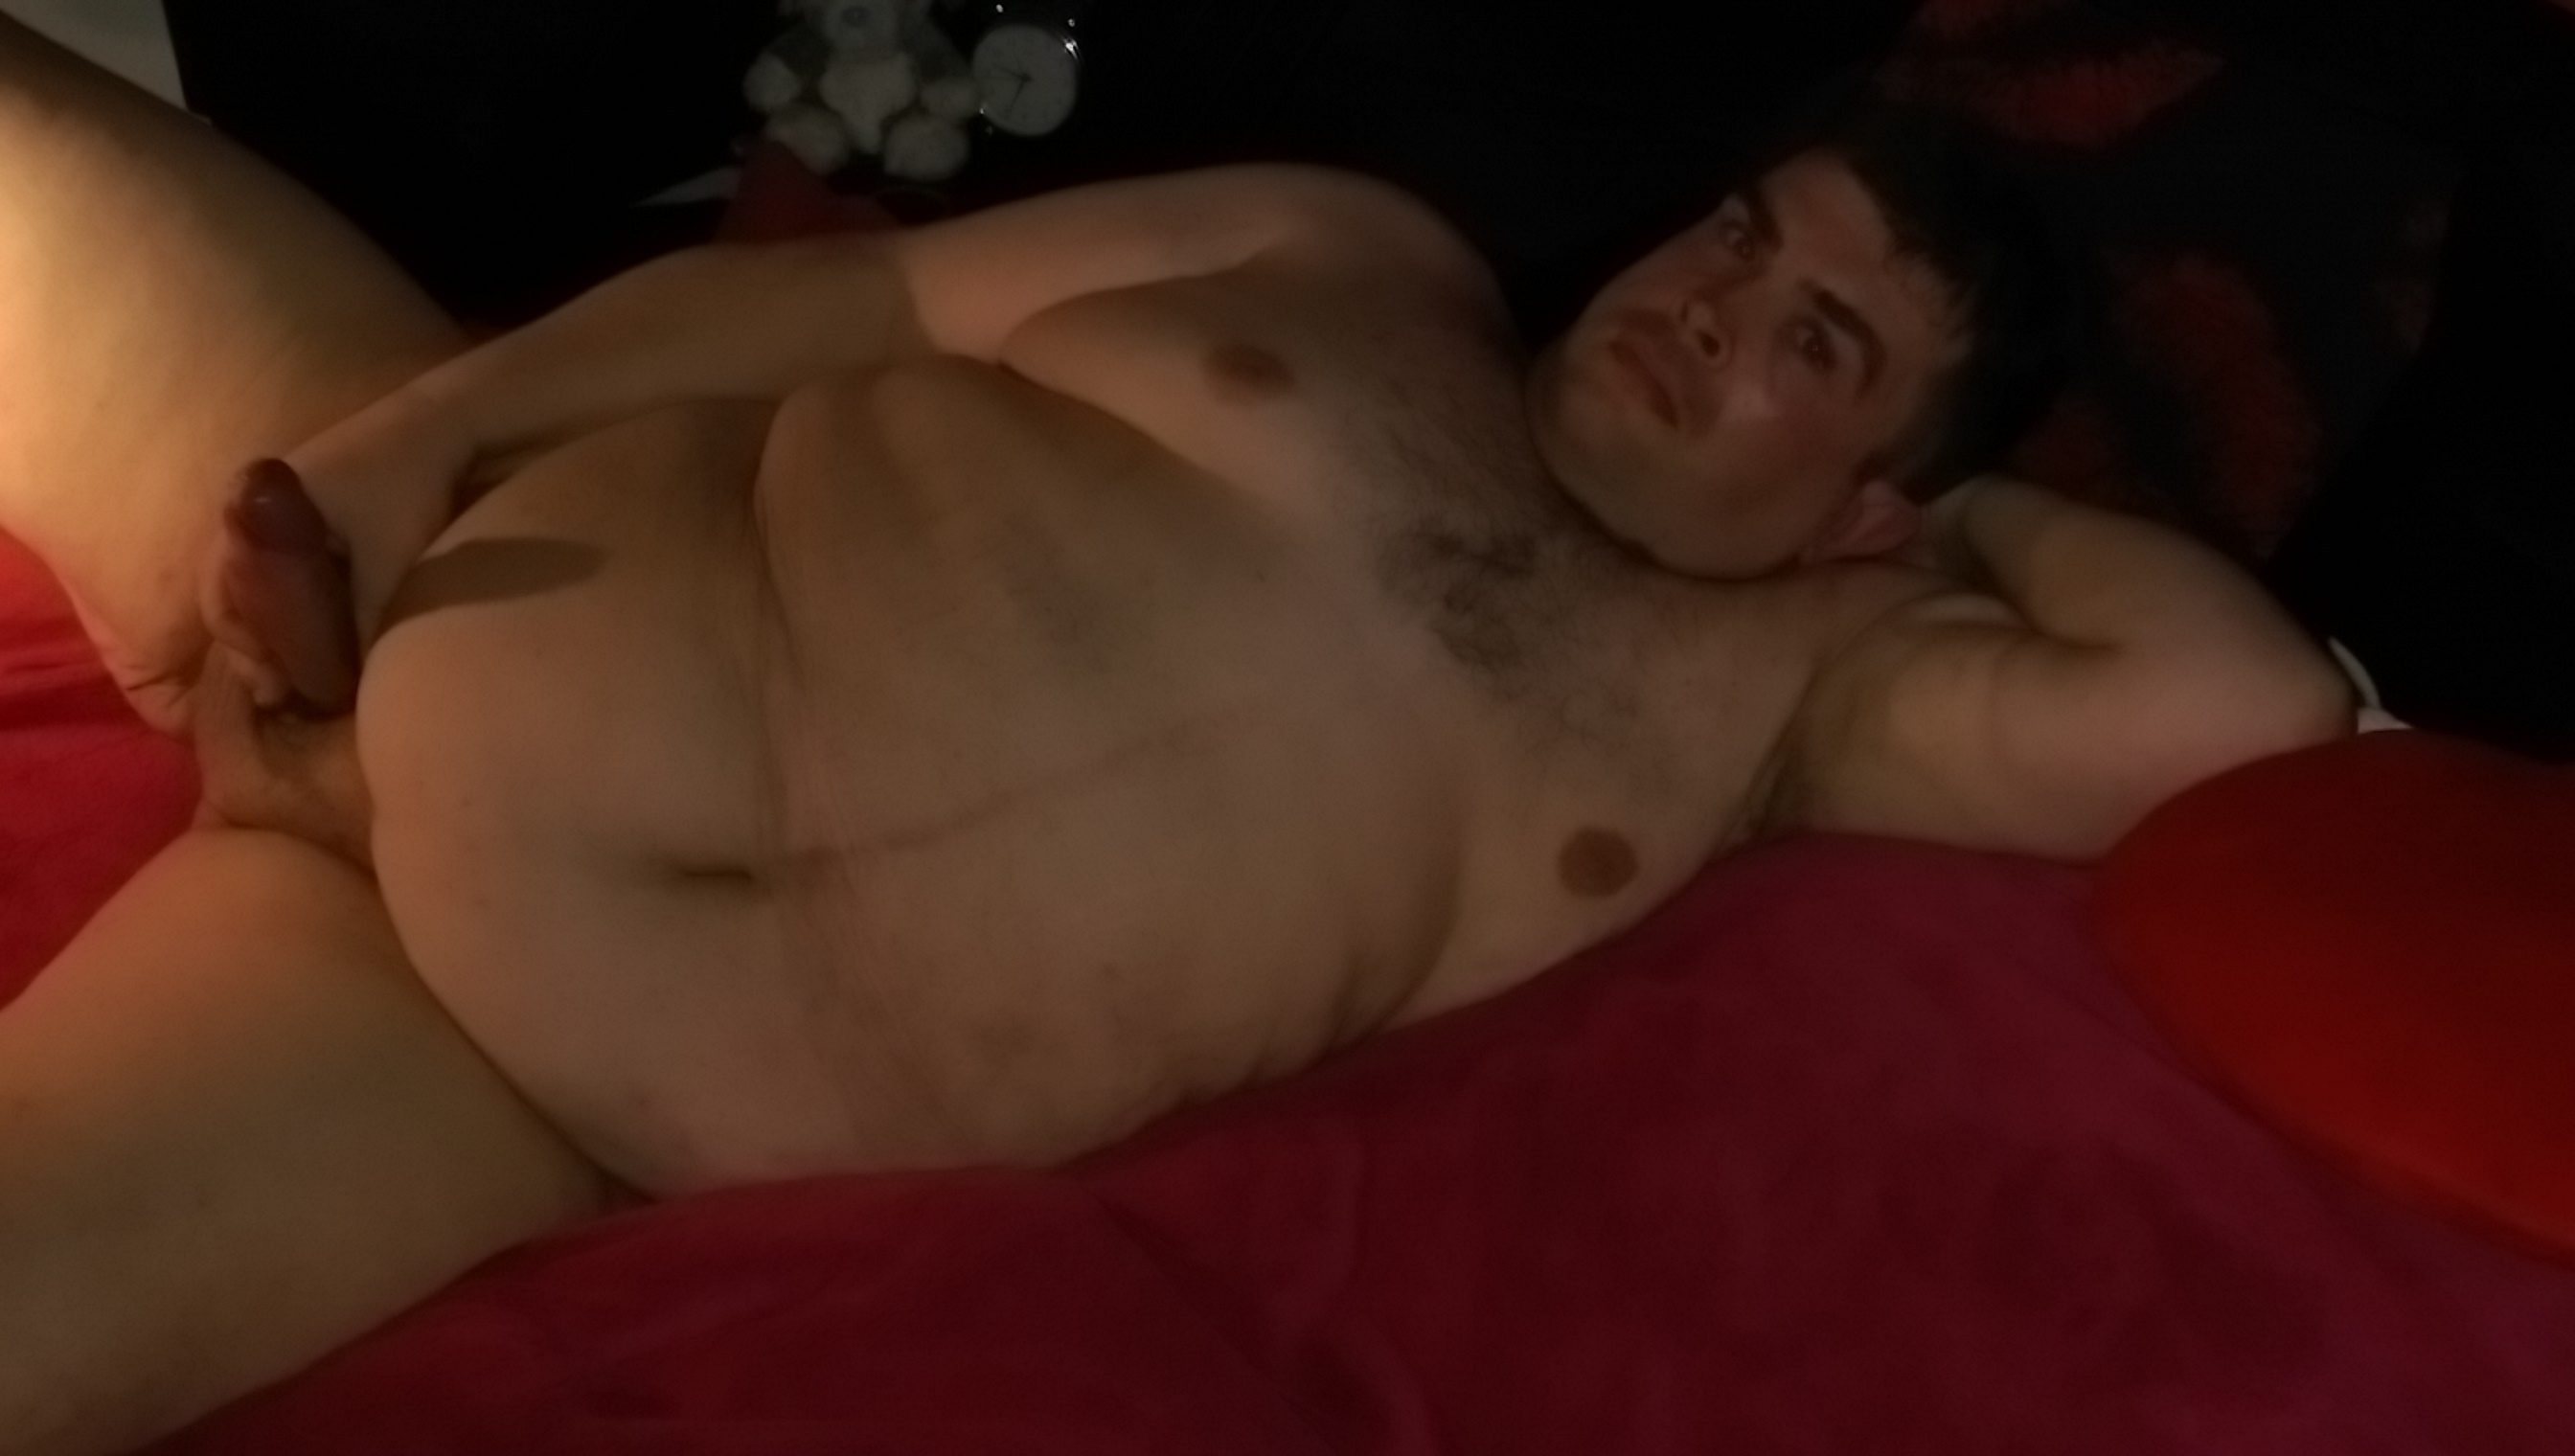 Fat guy porn